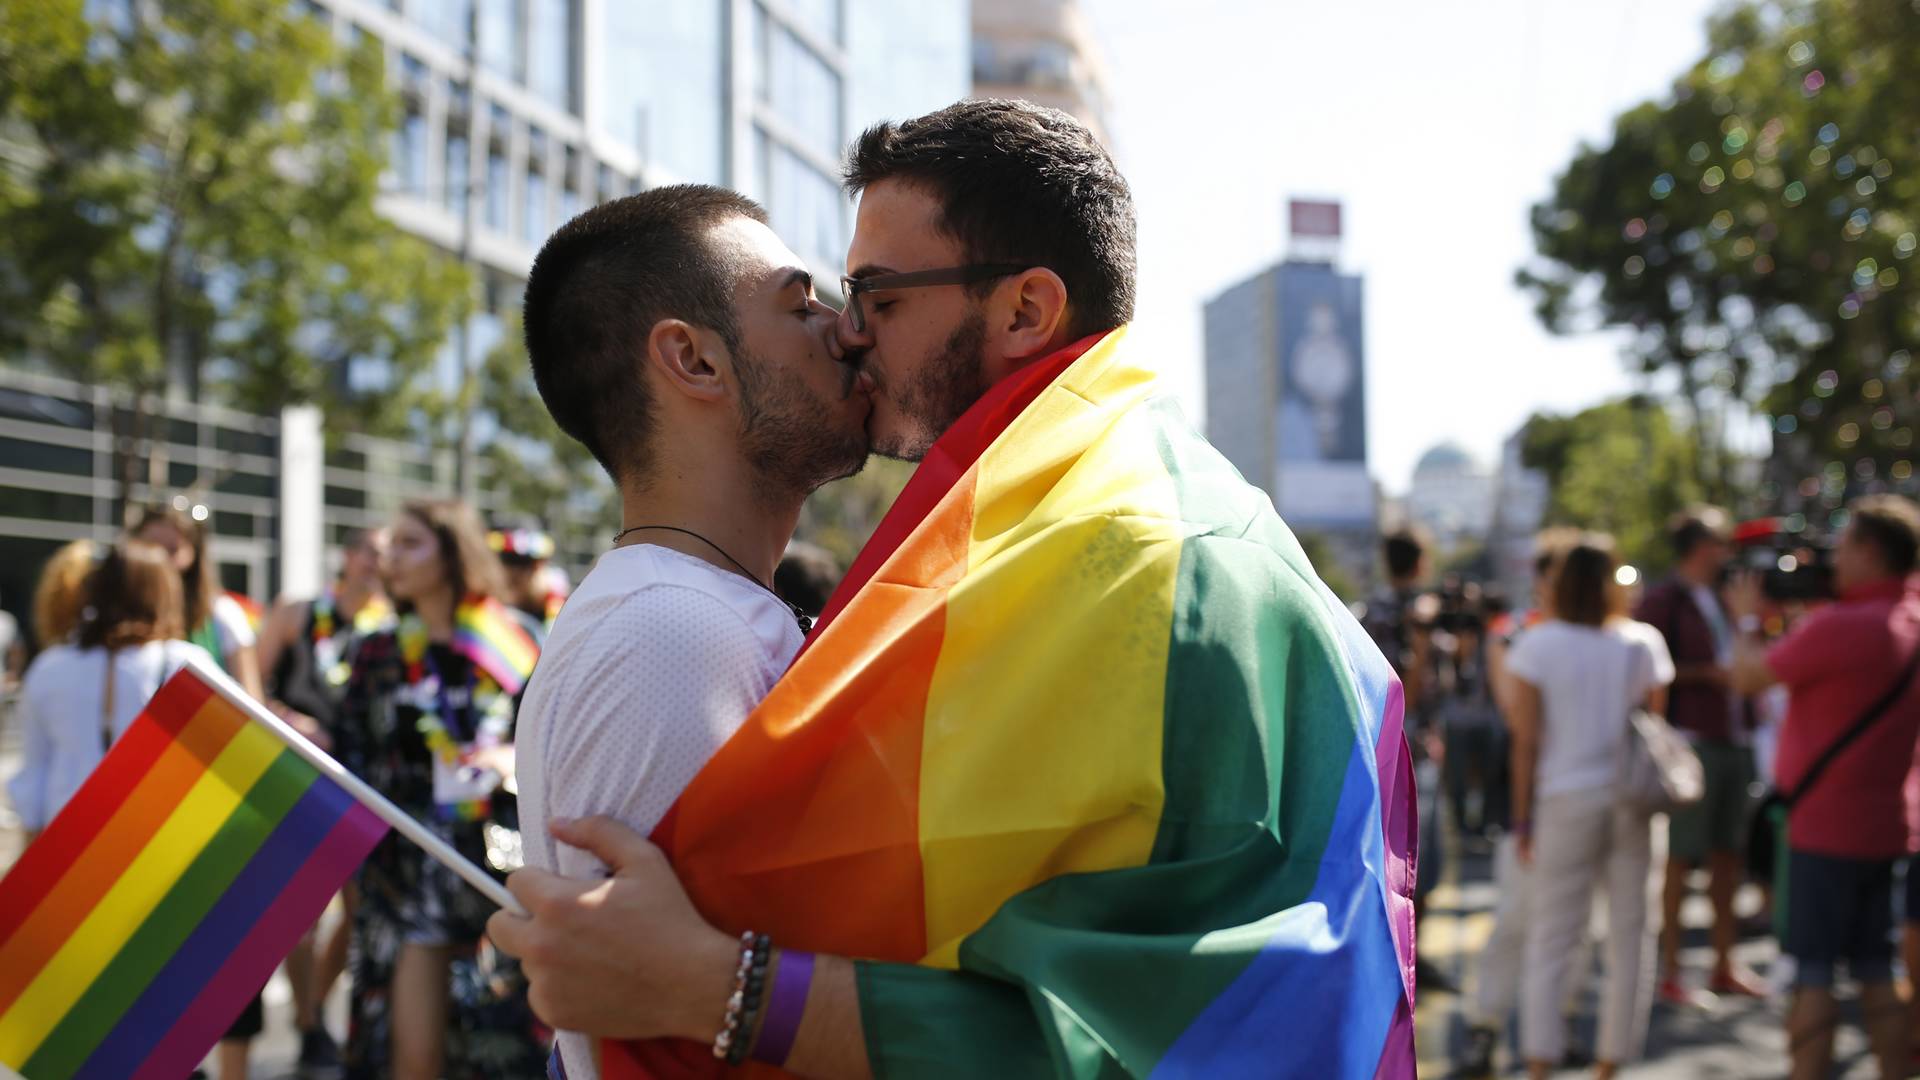 Srbi, naši matičari vas čekaju - crnogorske LGBT grupe pozivaju istopolne parove koji žele da sklope partnerstvo, da to urade u Crnoj Gori